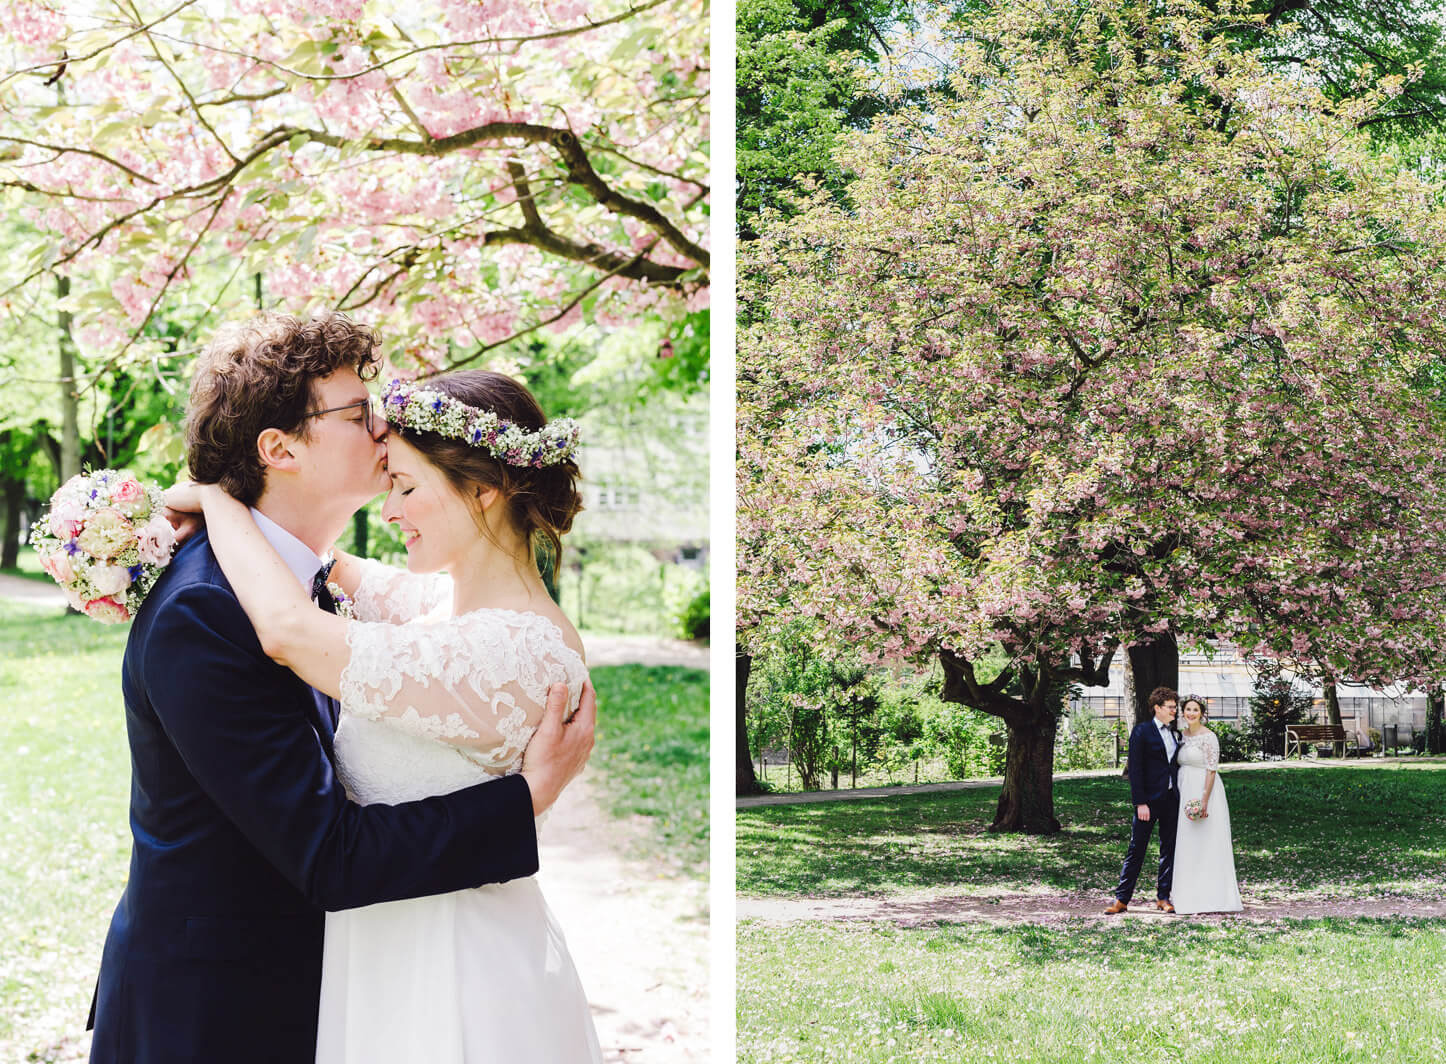 Brautpaarfotos unter dem Kirschbaum